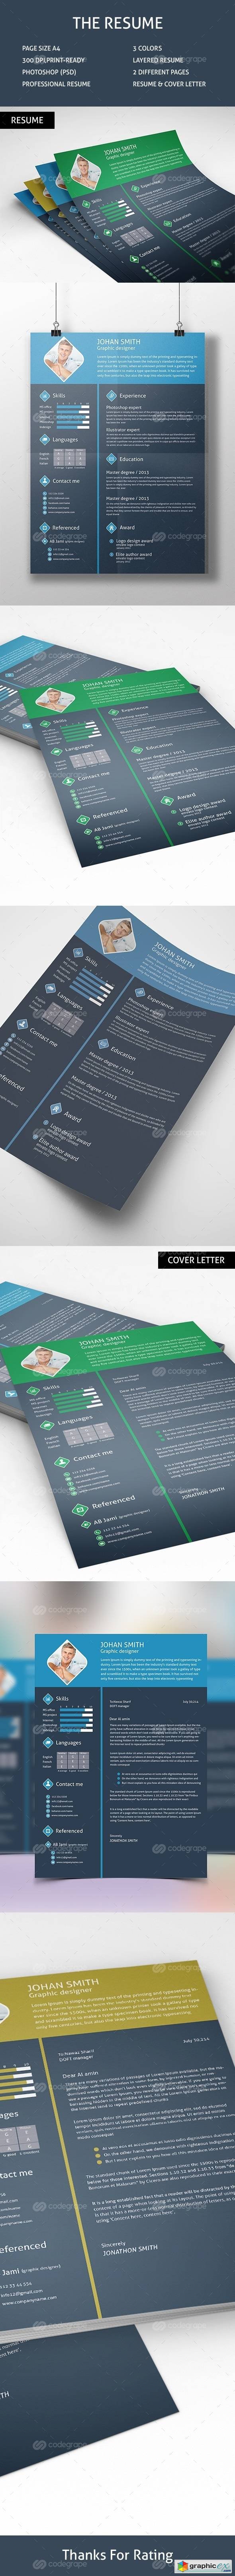 Designer Resume Cover Letter